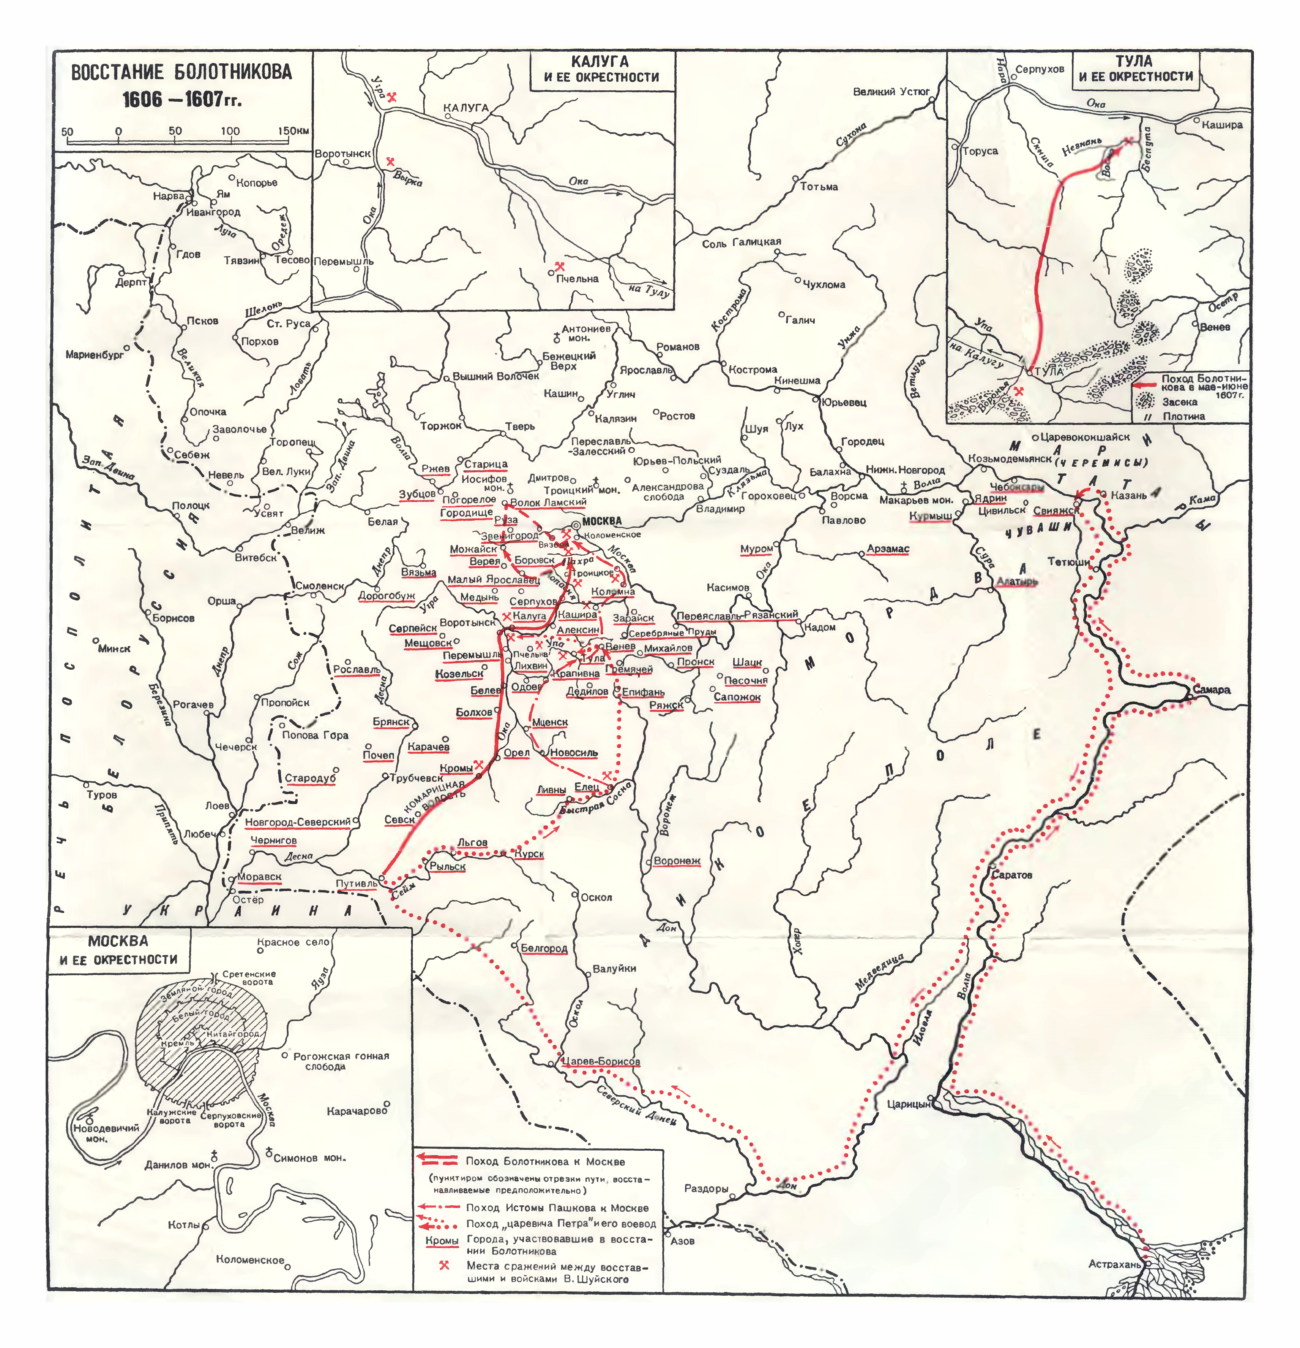 Восстание Болотникова 1606-1607 годы, карта-схема, И. И. Смирнов